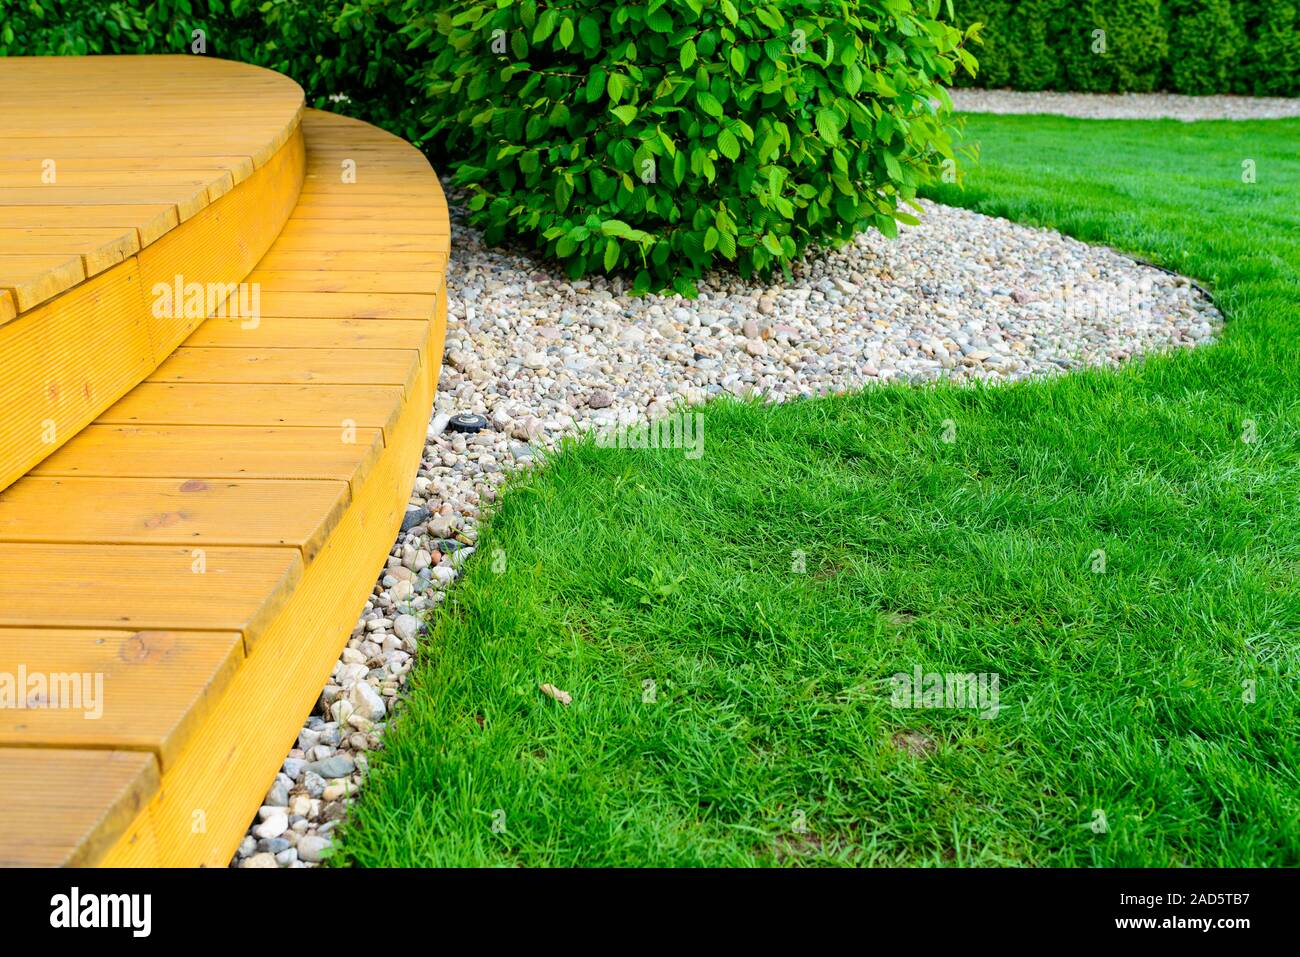 Terrasse im Garten nach Macht Waschen - helle grüne Rasen und kleine weiße Steine Stockfoto